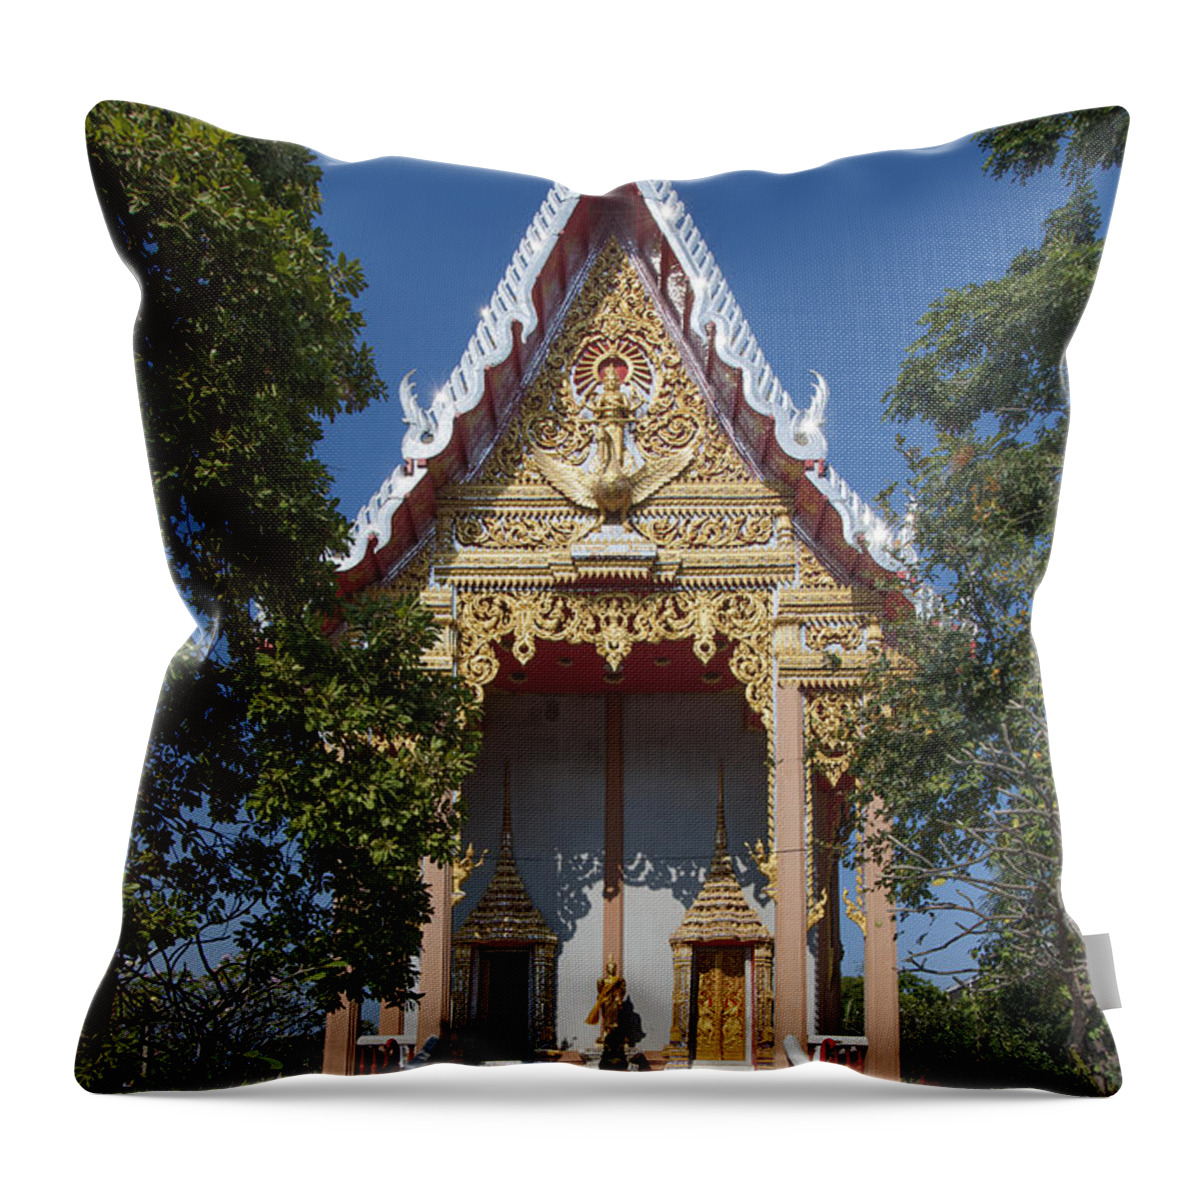 Bangkok Throw Pillow featuring the photograph Wat Laksi Ubosot DTHB1426 by Gerry Gantt